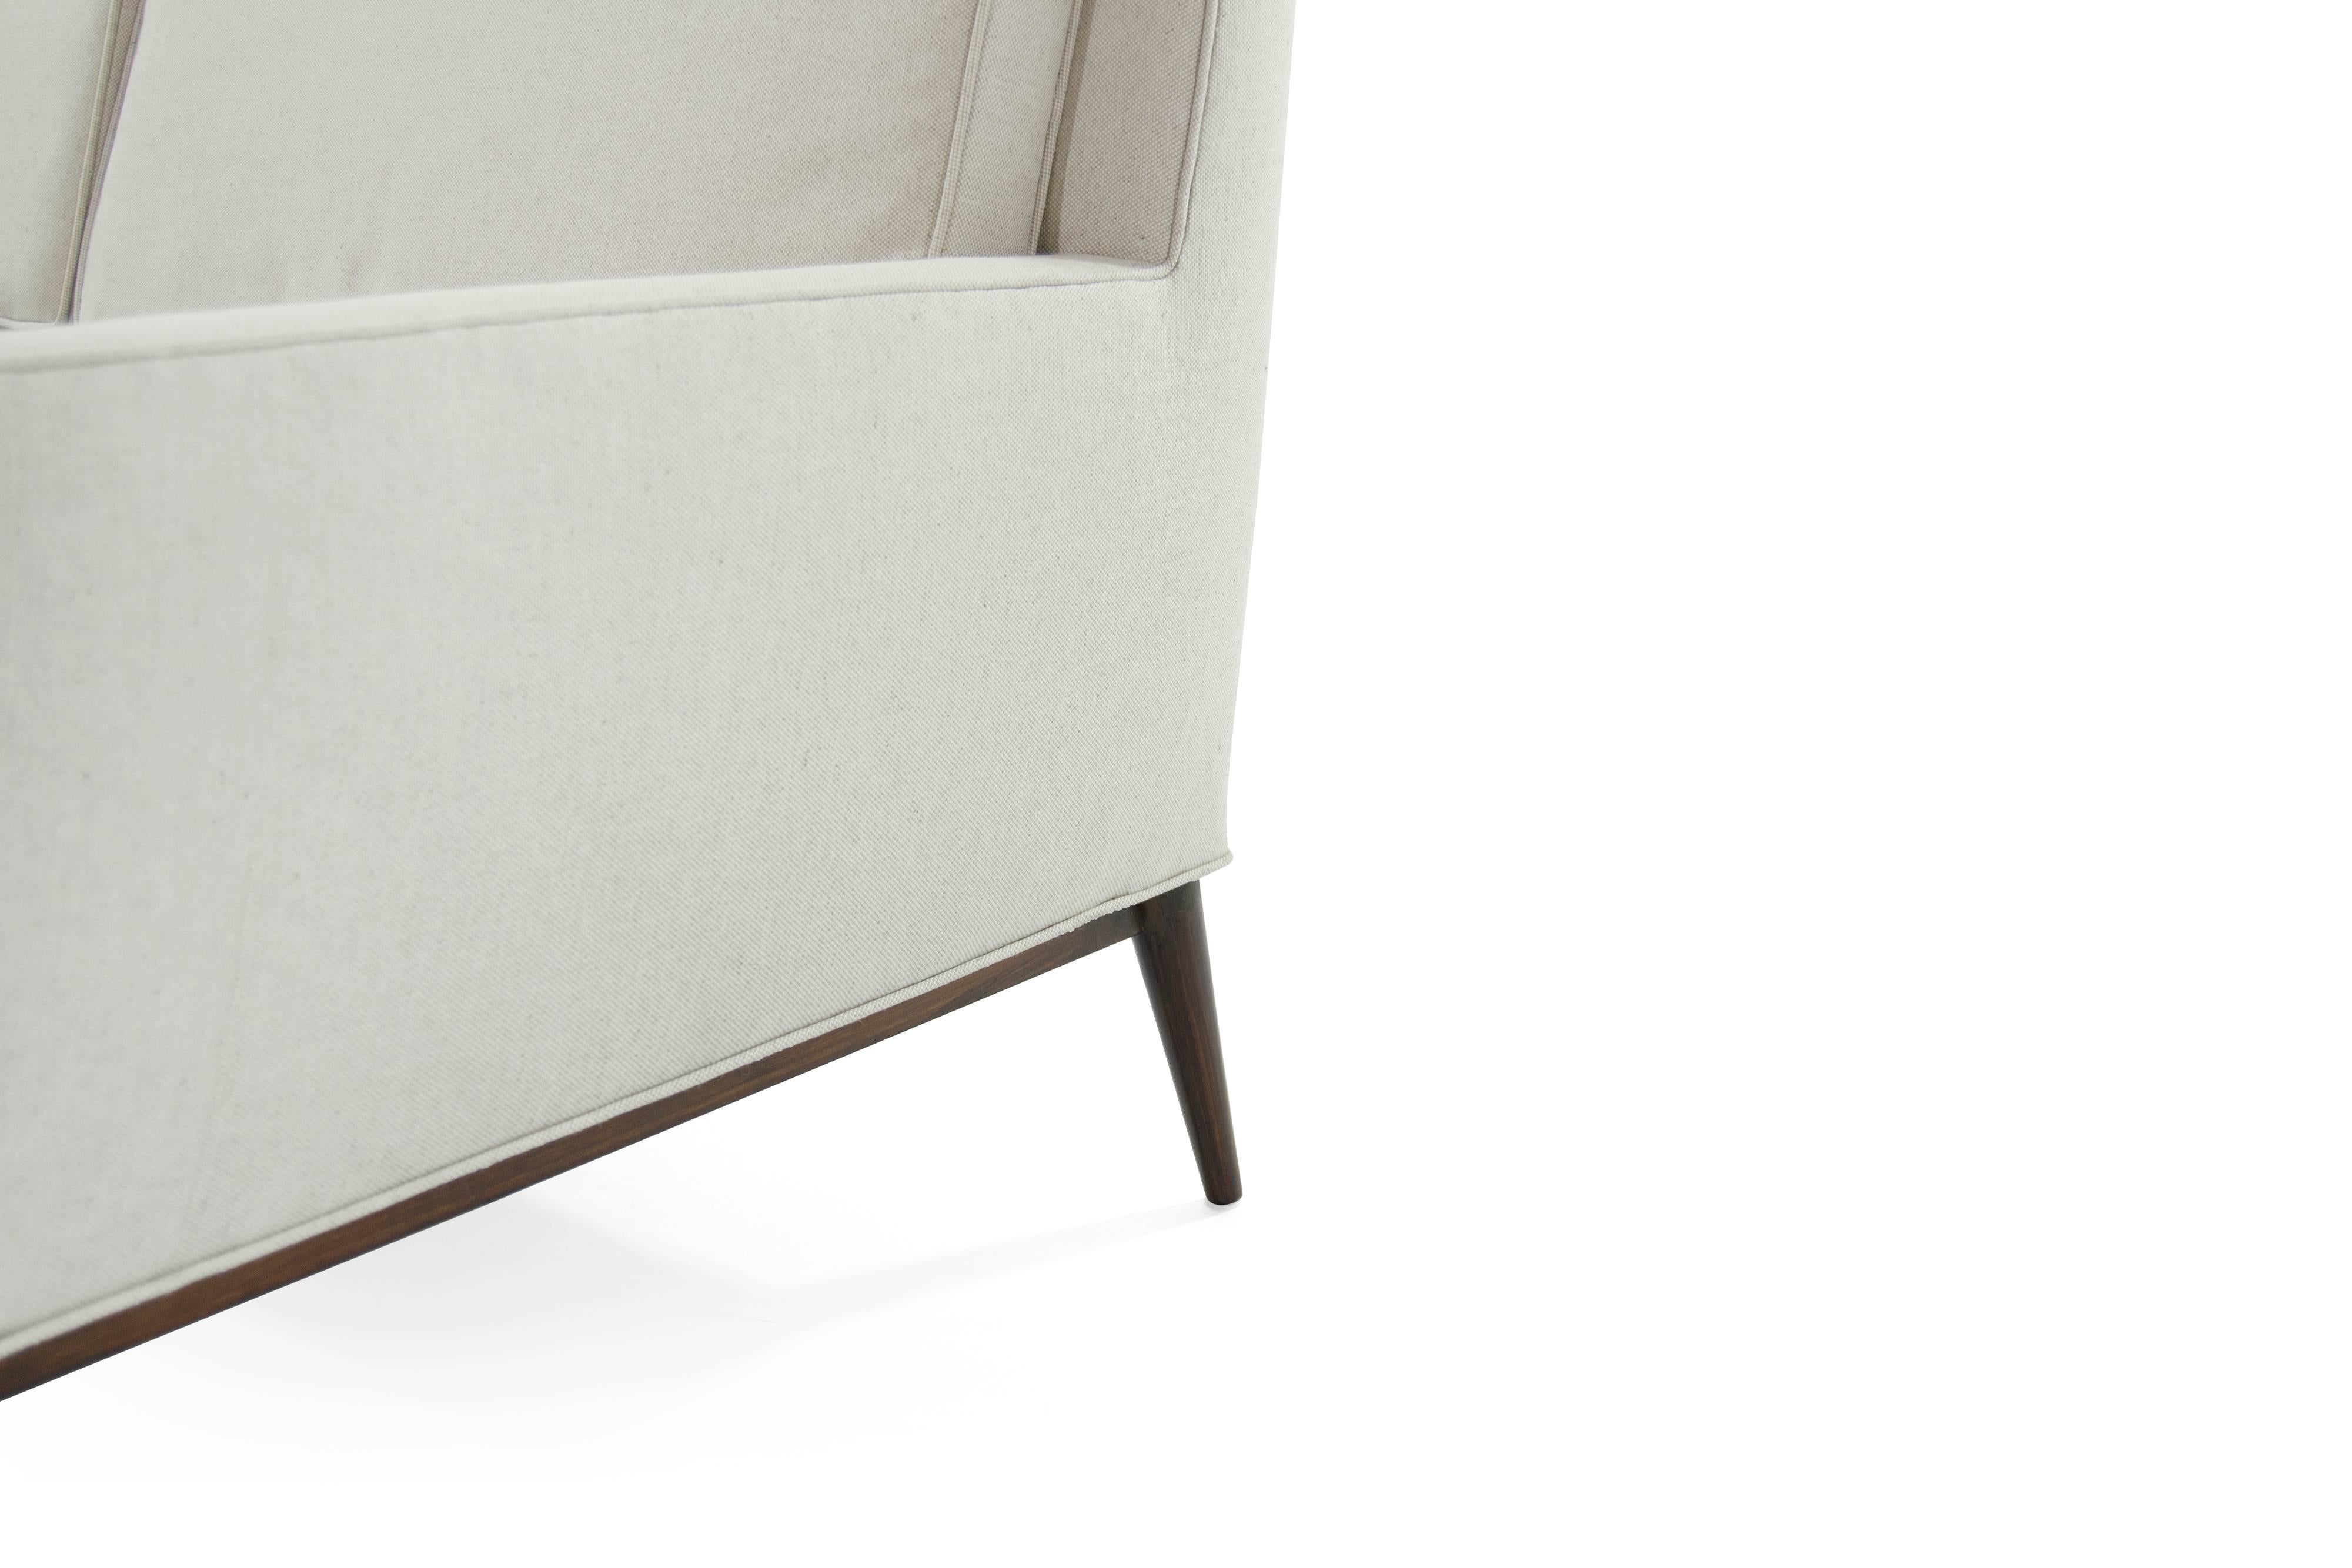 American Sofa in Linen by Paul McCobb, Model #1307